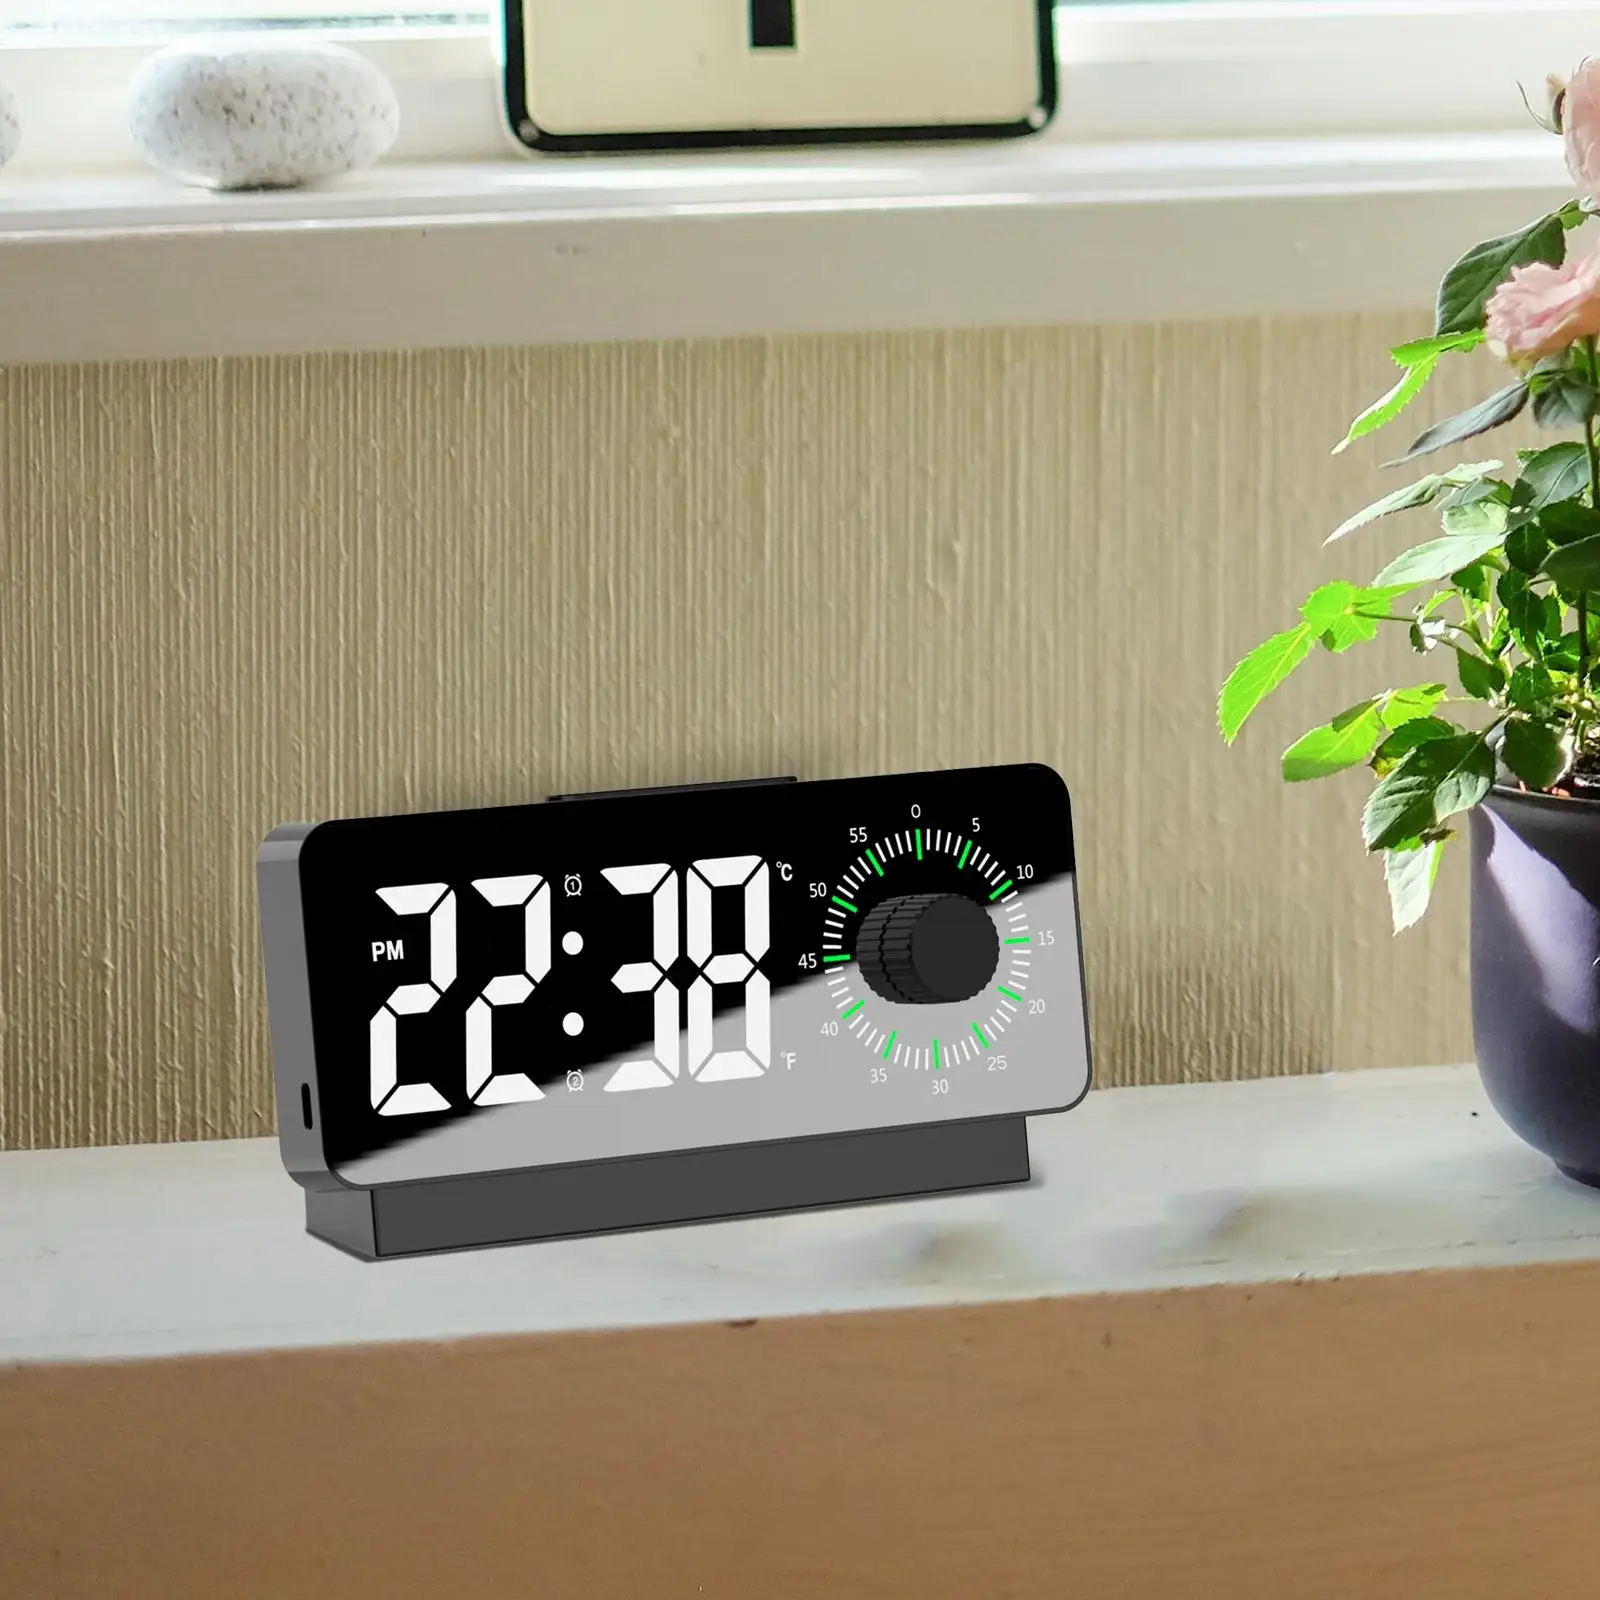 Digital Alarm Clock Modern Large Display LED Clock for Bedroom